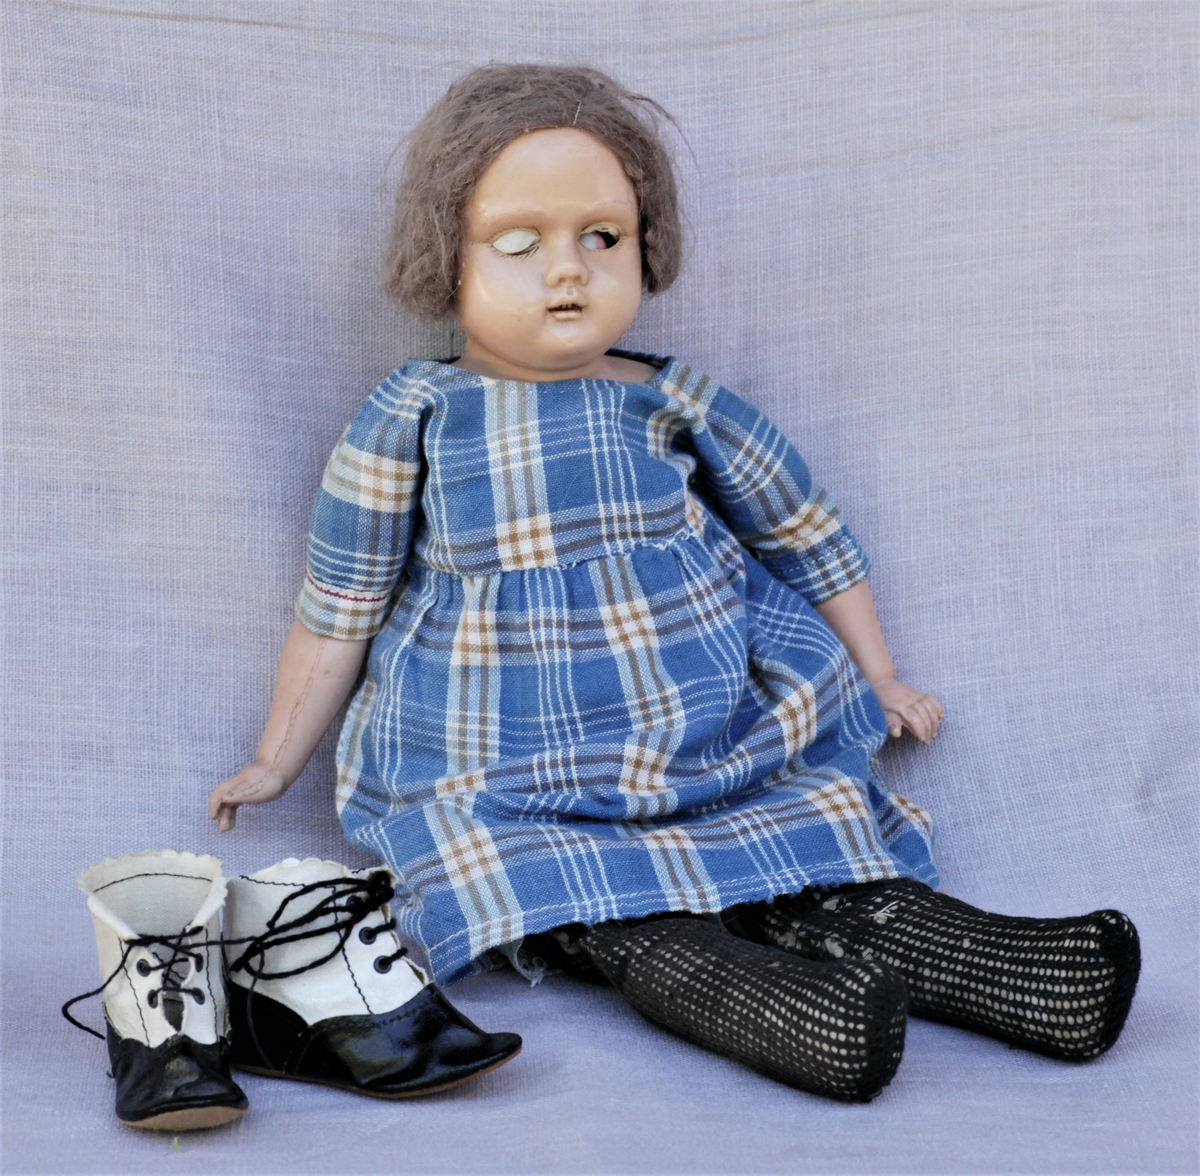 Dukken er en tysk "Skilpadde dukke", modell Åse. Tøykropp, celluloidhode og armer. Original kjole og klær. Brukt av giveren selv og hennes døtre